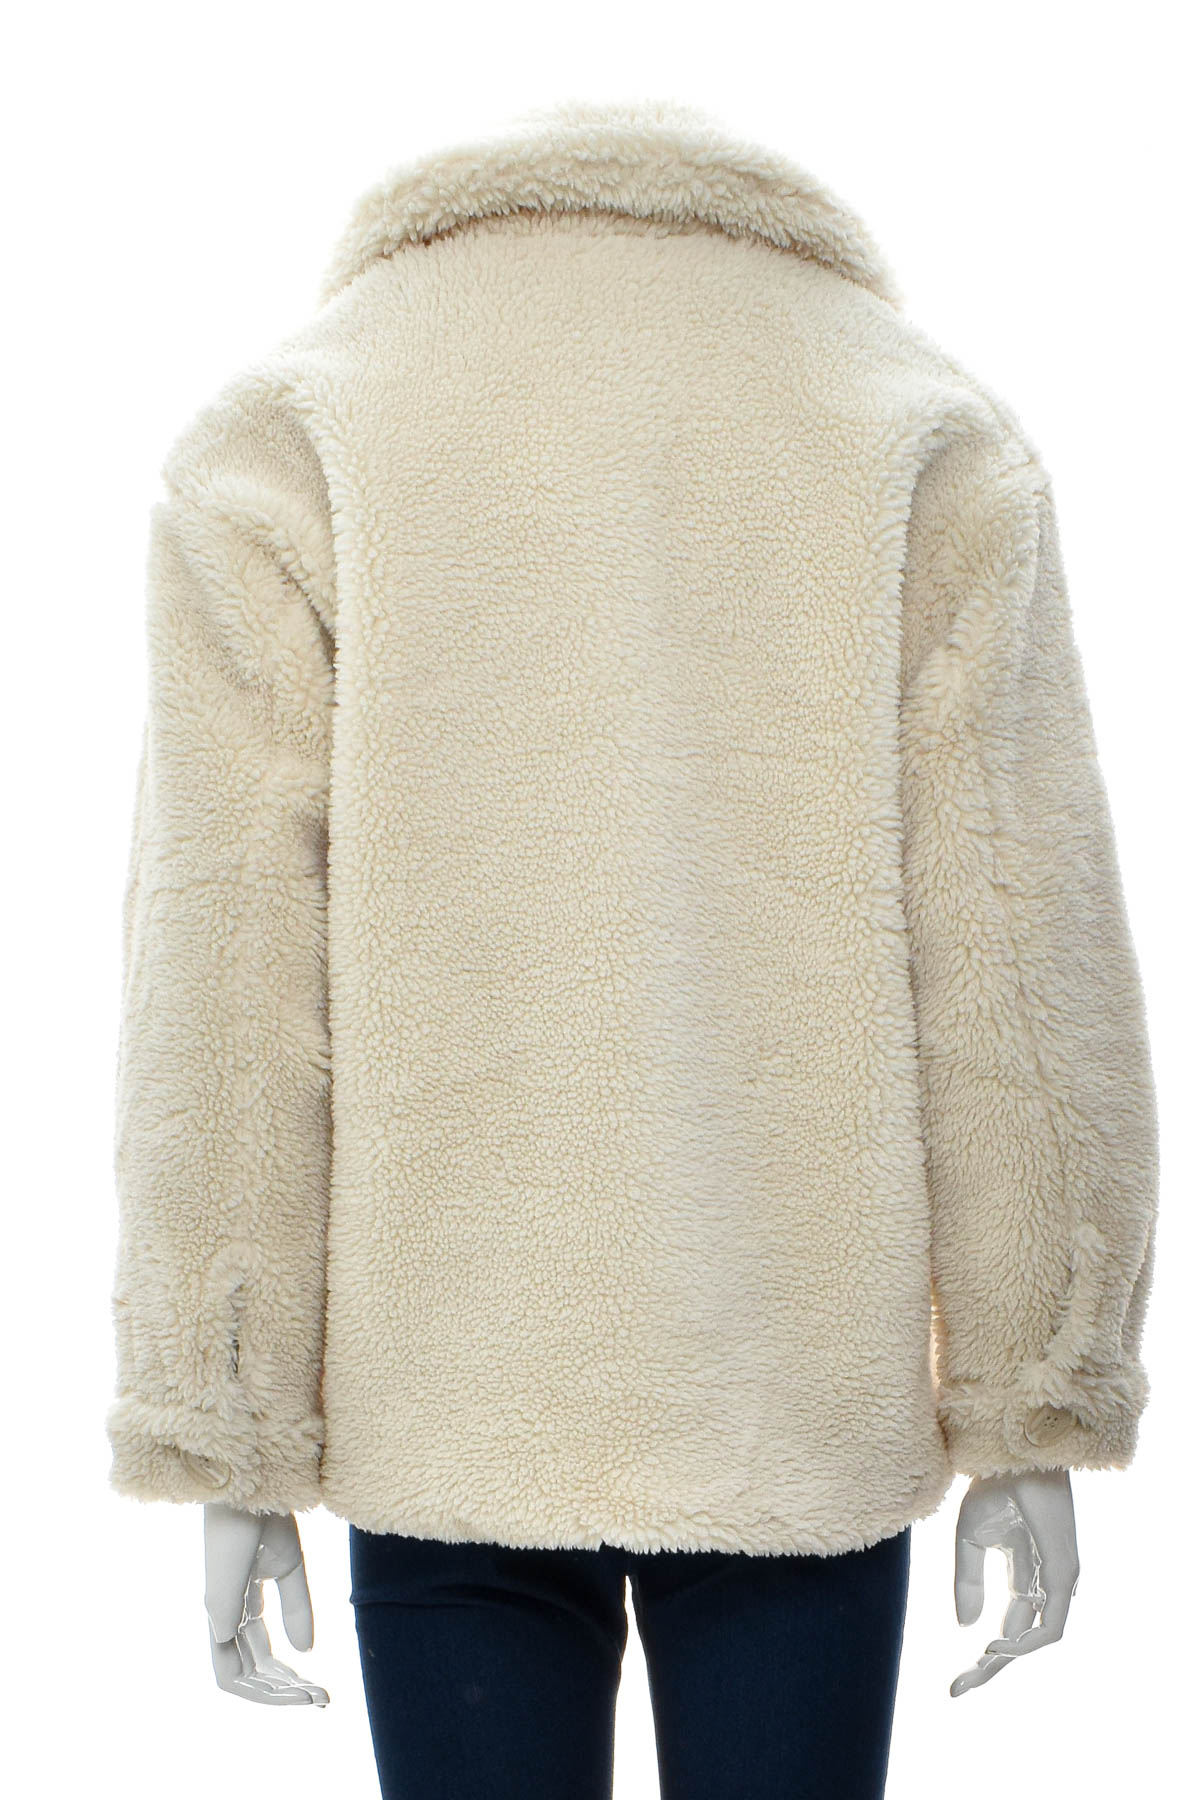 Γυναικείο παλτό - Pull & Bear - 1